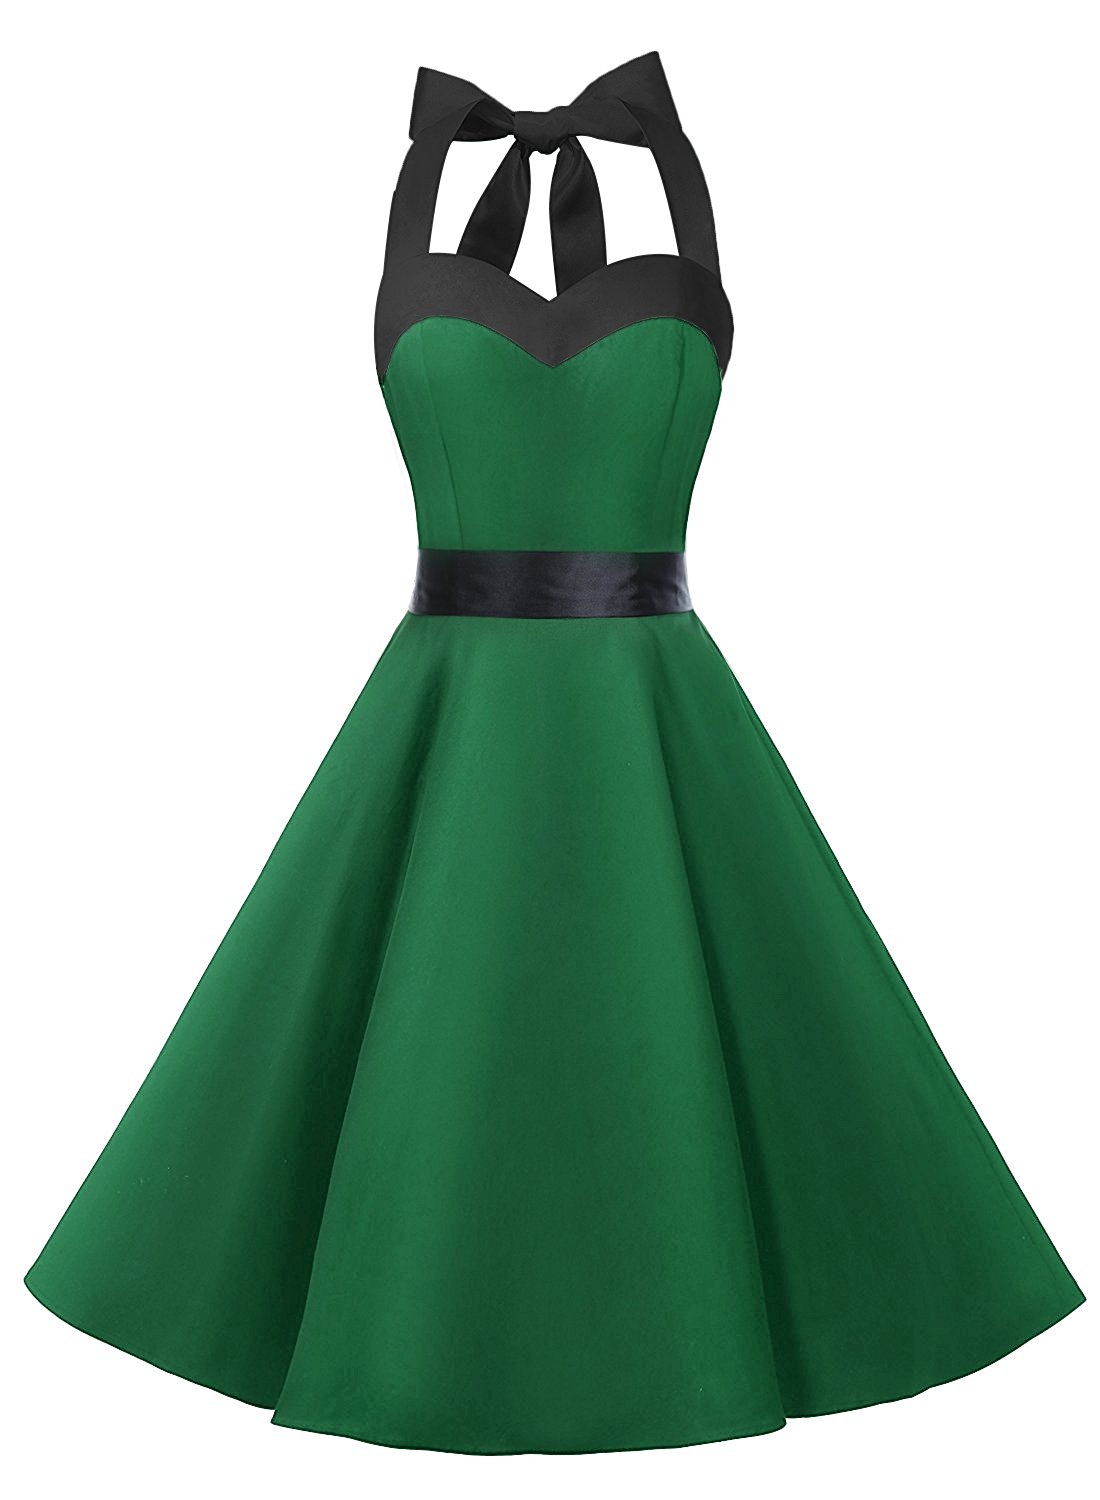 green rockabilly dress